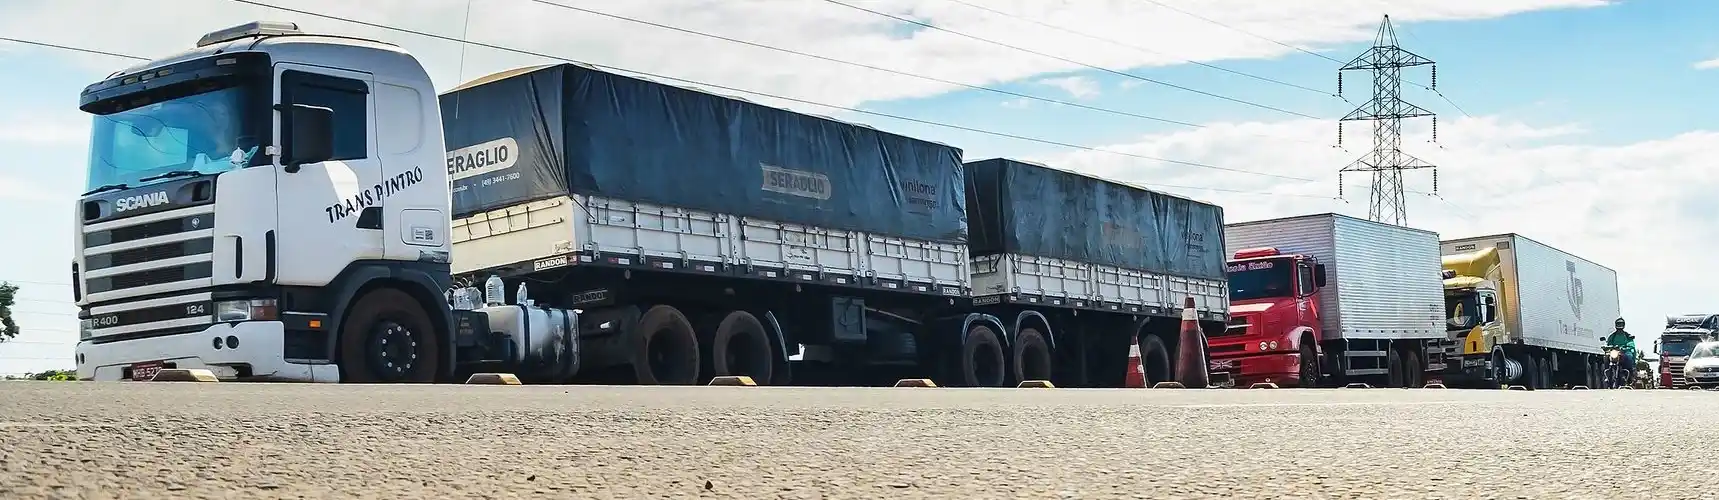 Multas por excesso de peso: imagem mostra caminhão carregado aguardando